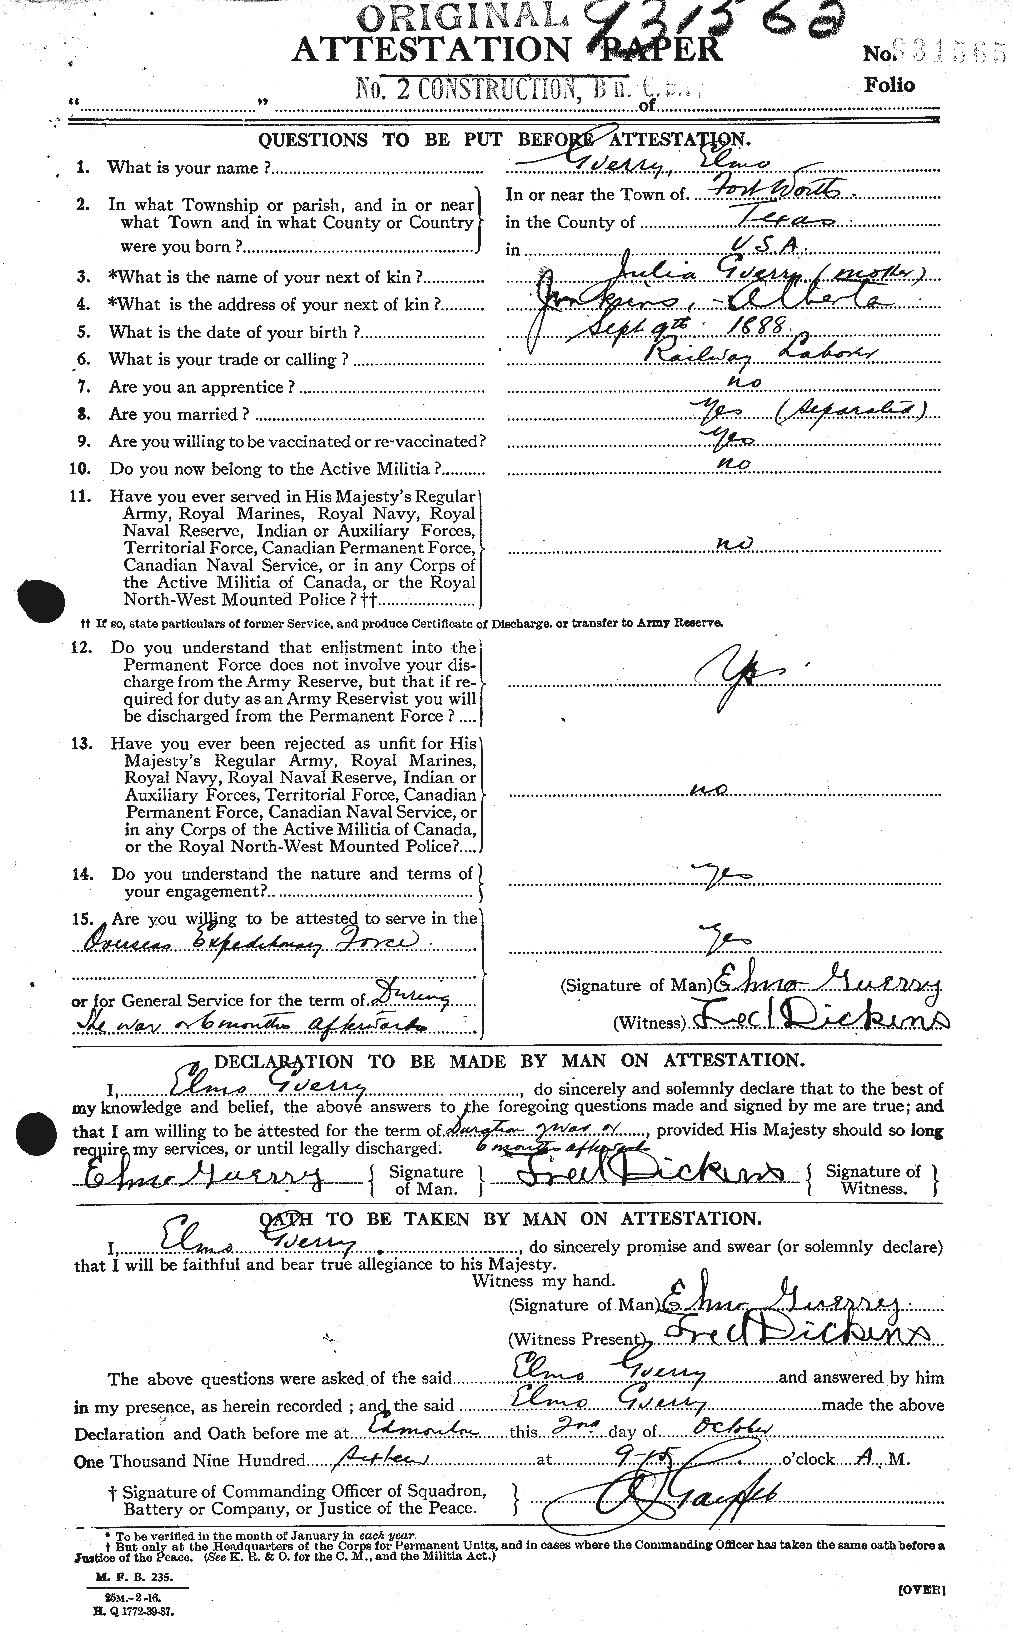 Dossiers du Personnel de la Première Guerre mondiale - CEC 369742a